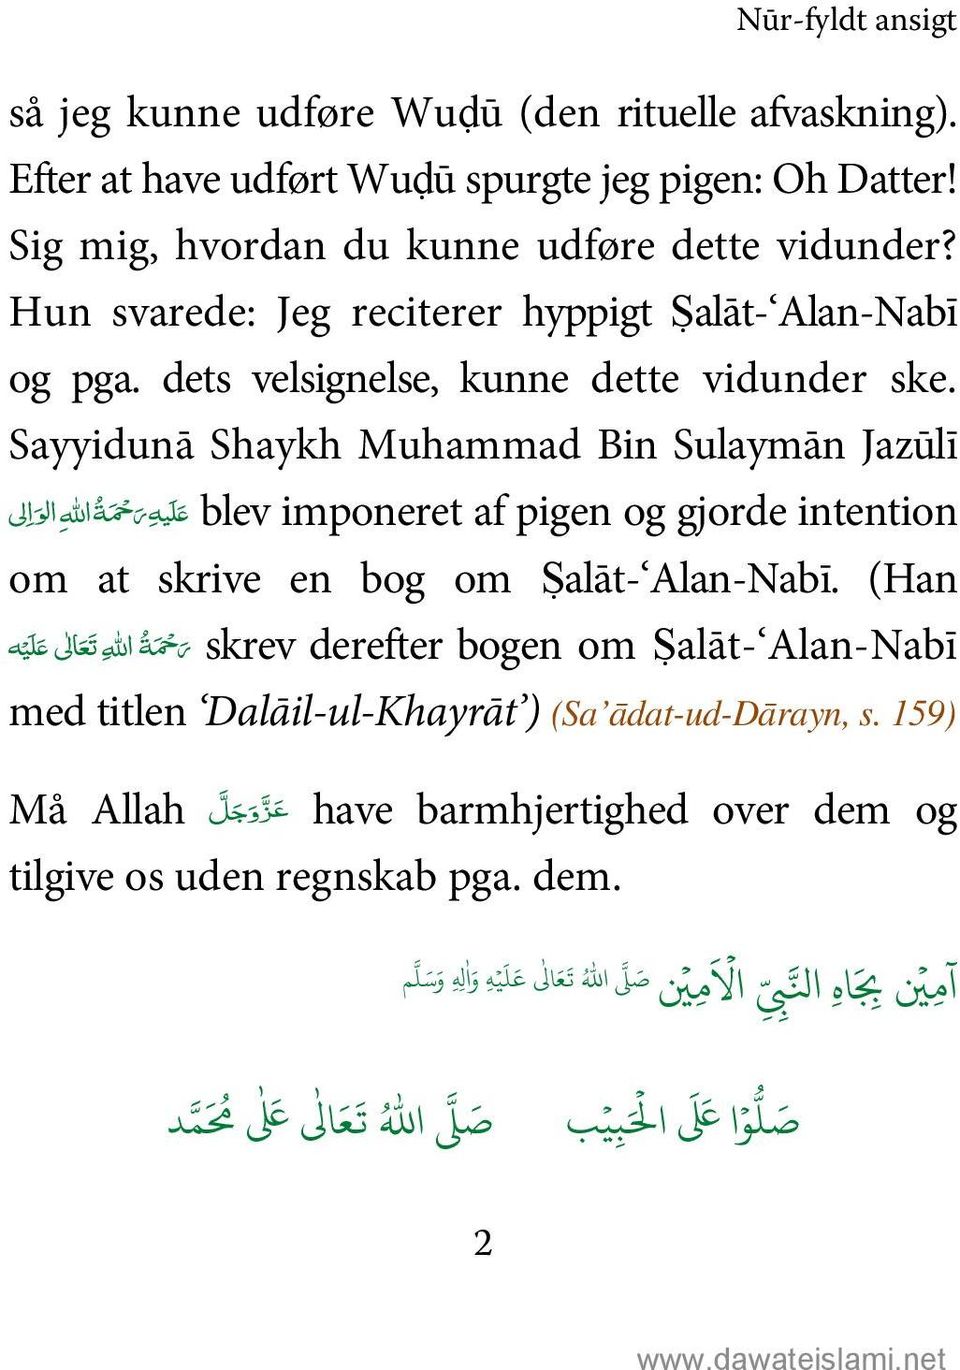 Sayyidunā Shaykh Muhammad Bin Sulaymān Jazūlī blev imponeret af pigen og gjorde intention الو ا لى % ل ي هر حم ةاالله om at skrive en bog om Ṣalāt- Alan-Nabī.